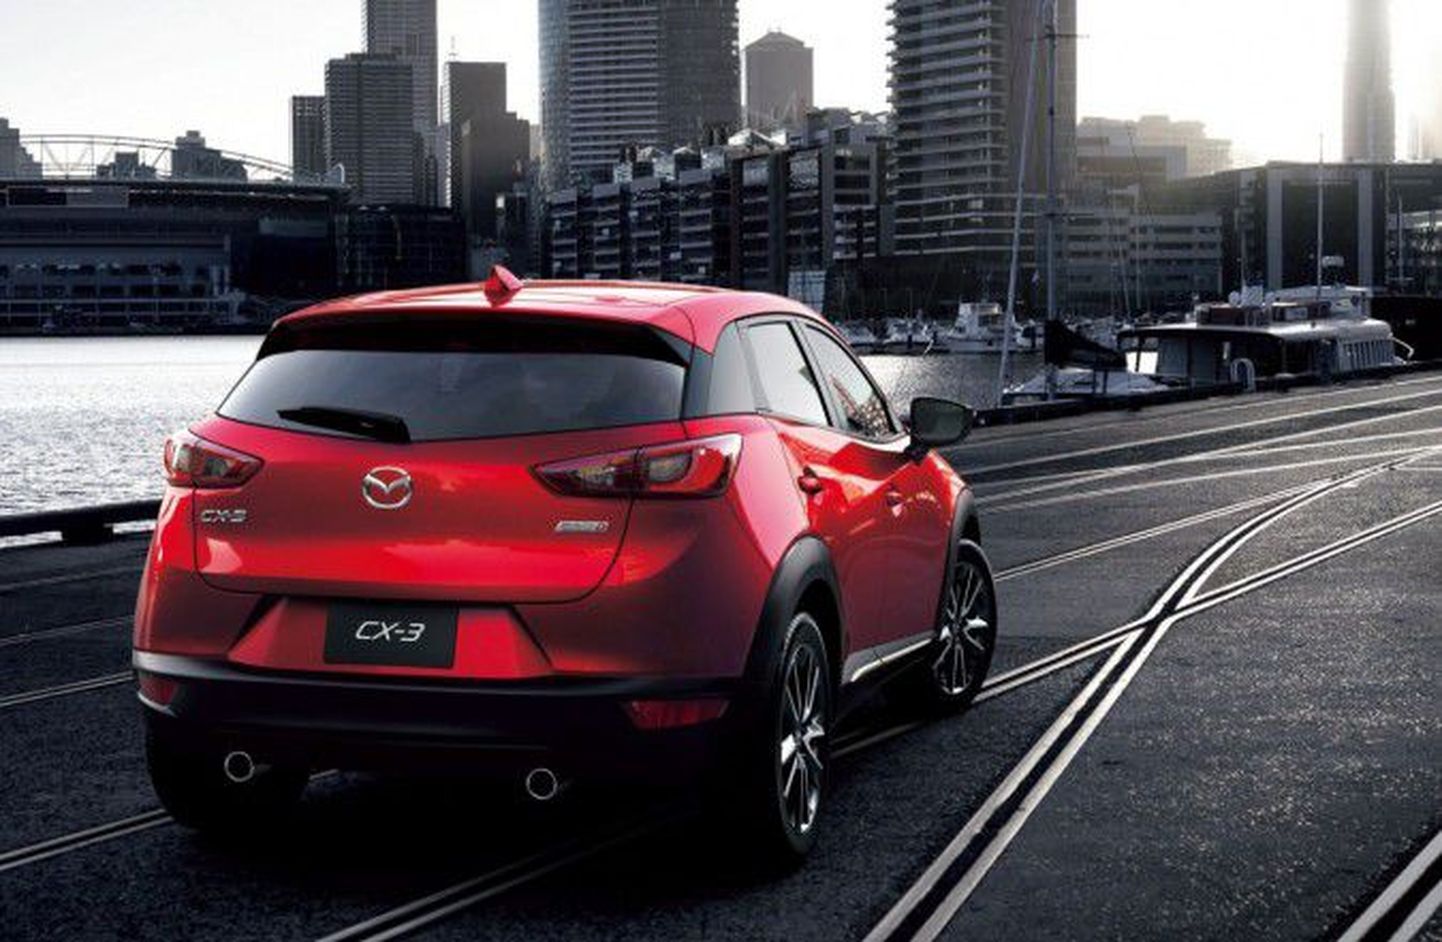 Mazda otsustas oma väikese diiselmootoriga uusi mudeleid, nagu see CX-3, USA turule mitte viia.